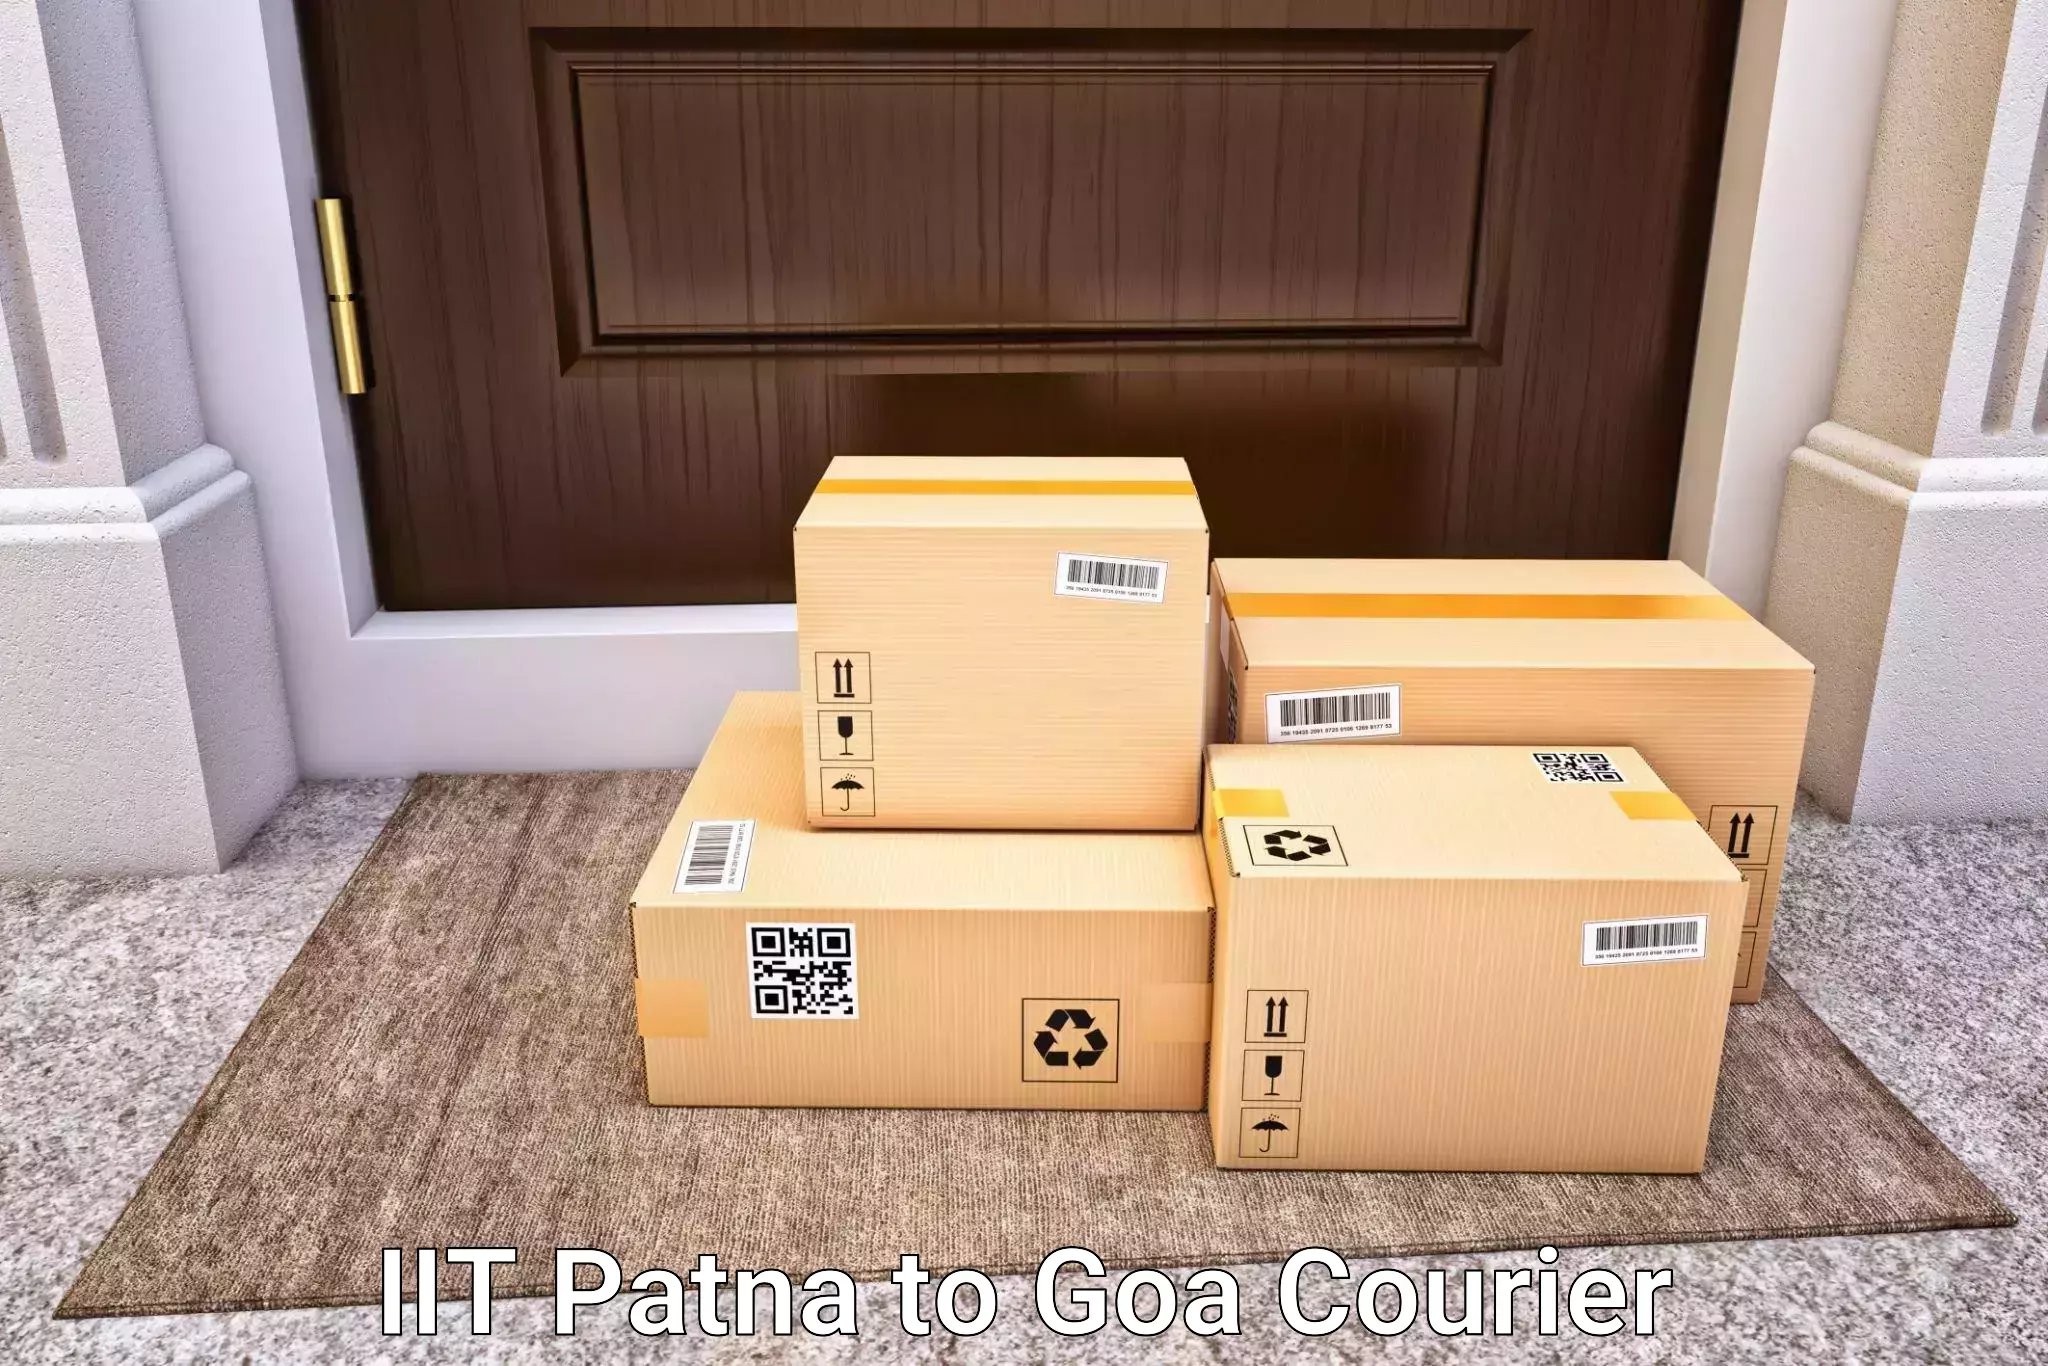 Luggage transport company IIT Patna to Canacona